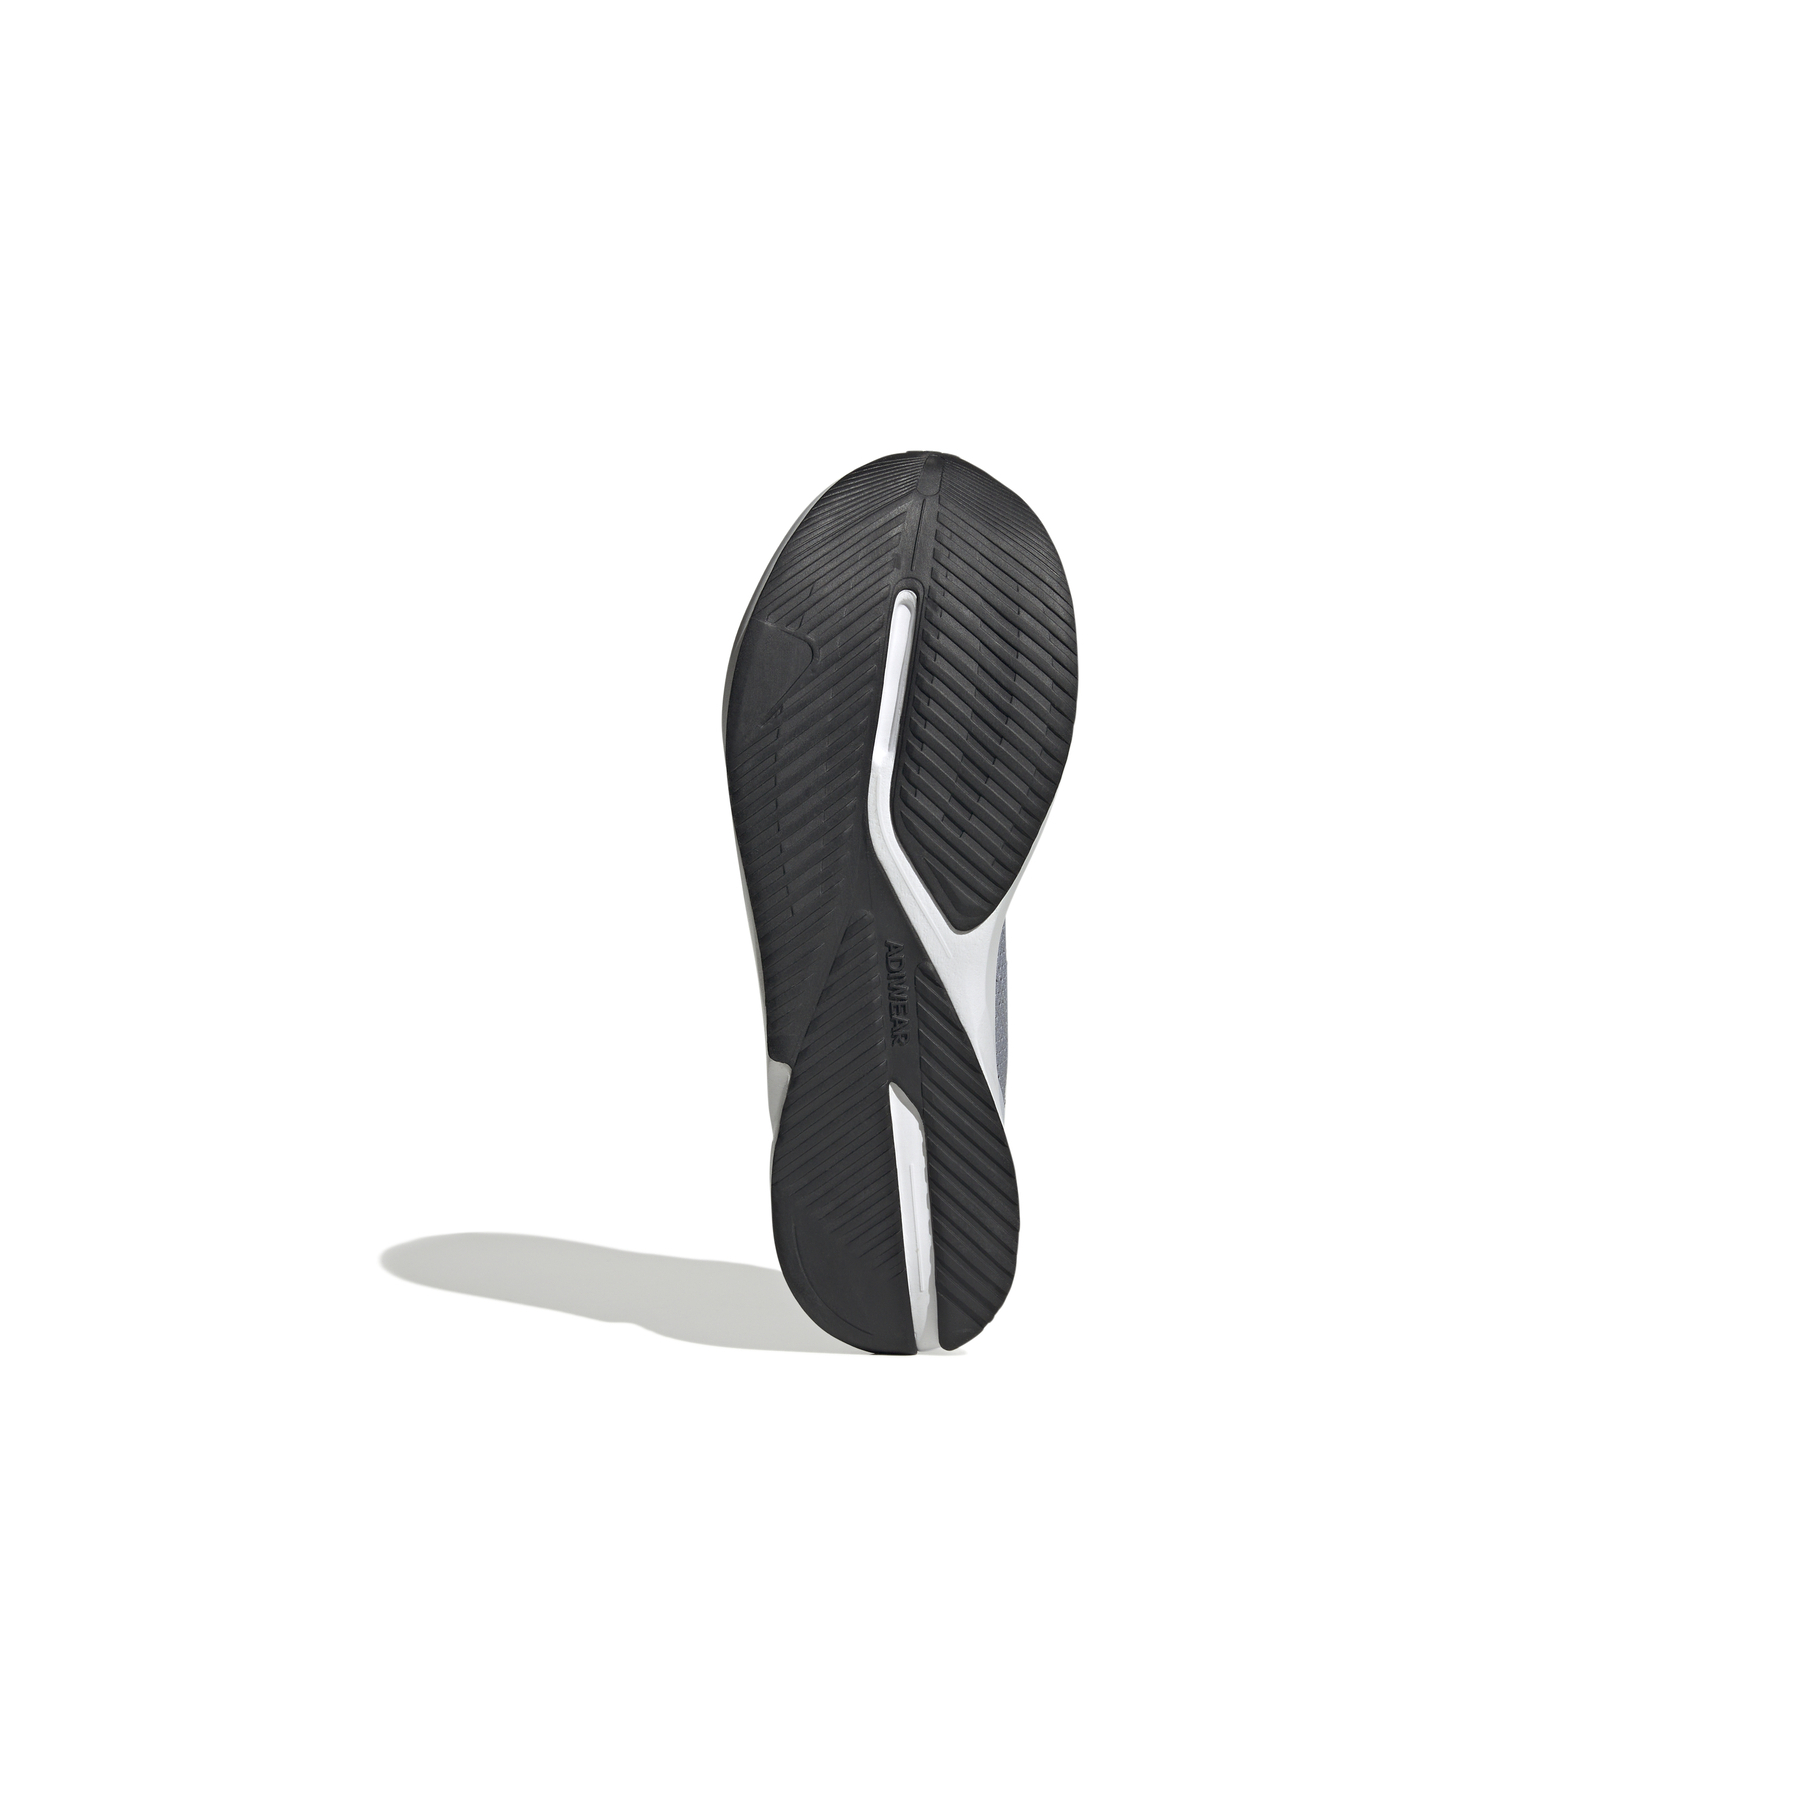 adidas Duramo Erkek Gri Koşu Ayakkabısı (IE9689)